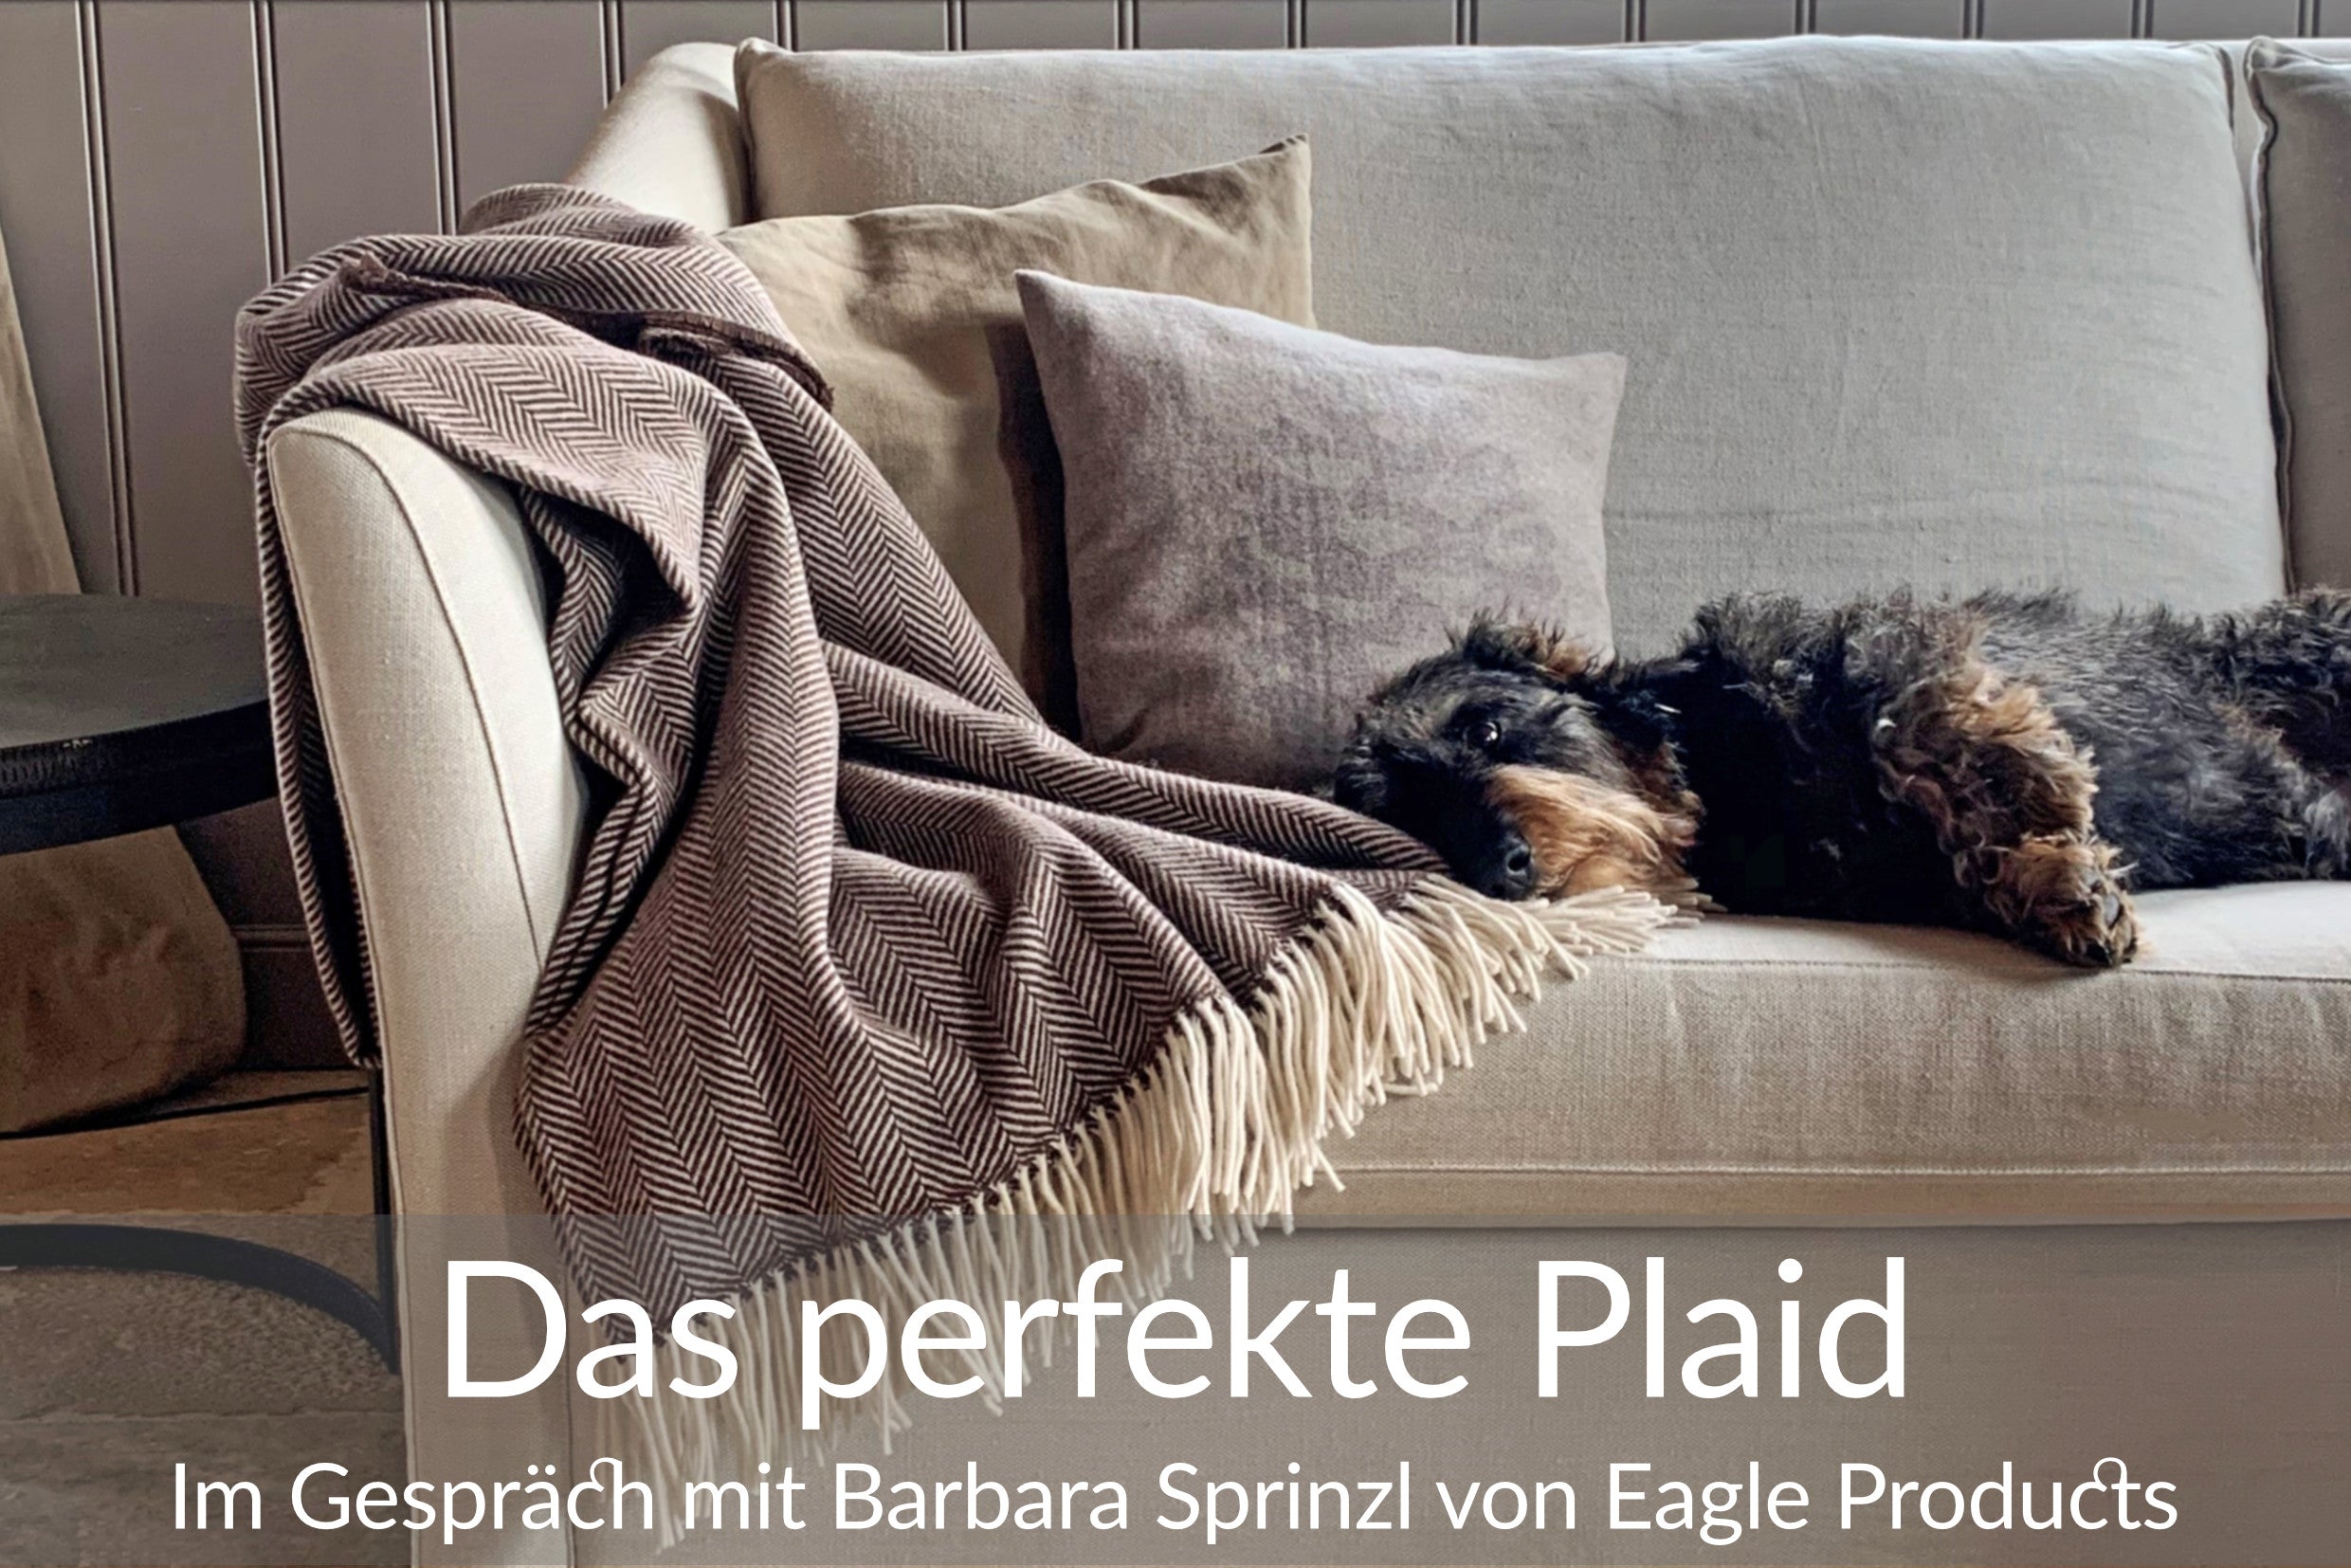 Im Gespräch mit Barbara Sprinzl von Eagle Products über das perfekte Plaid